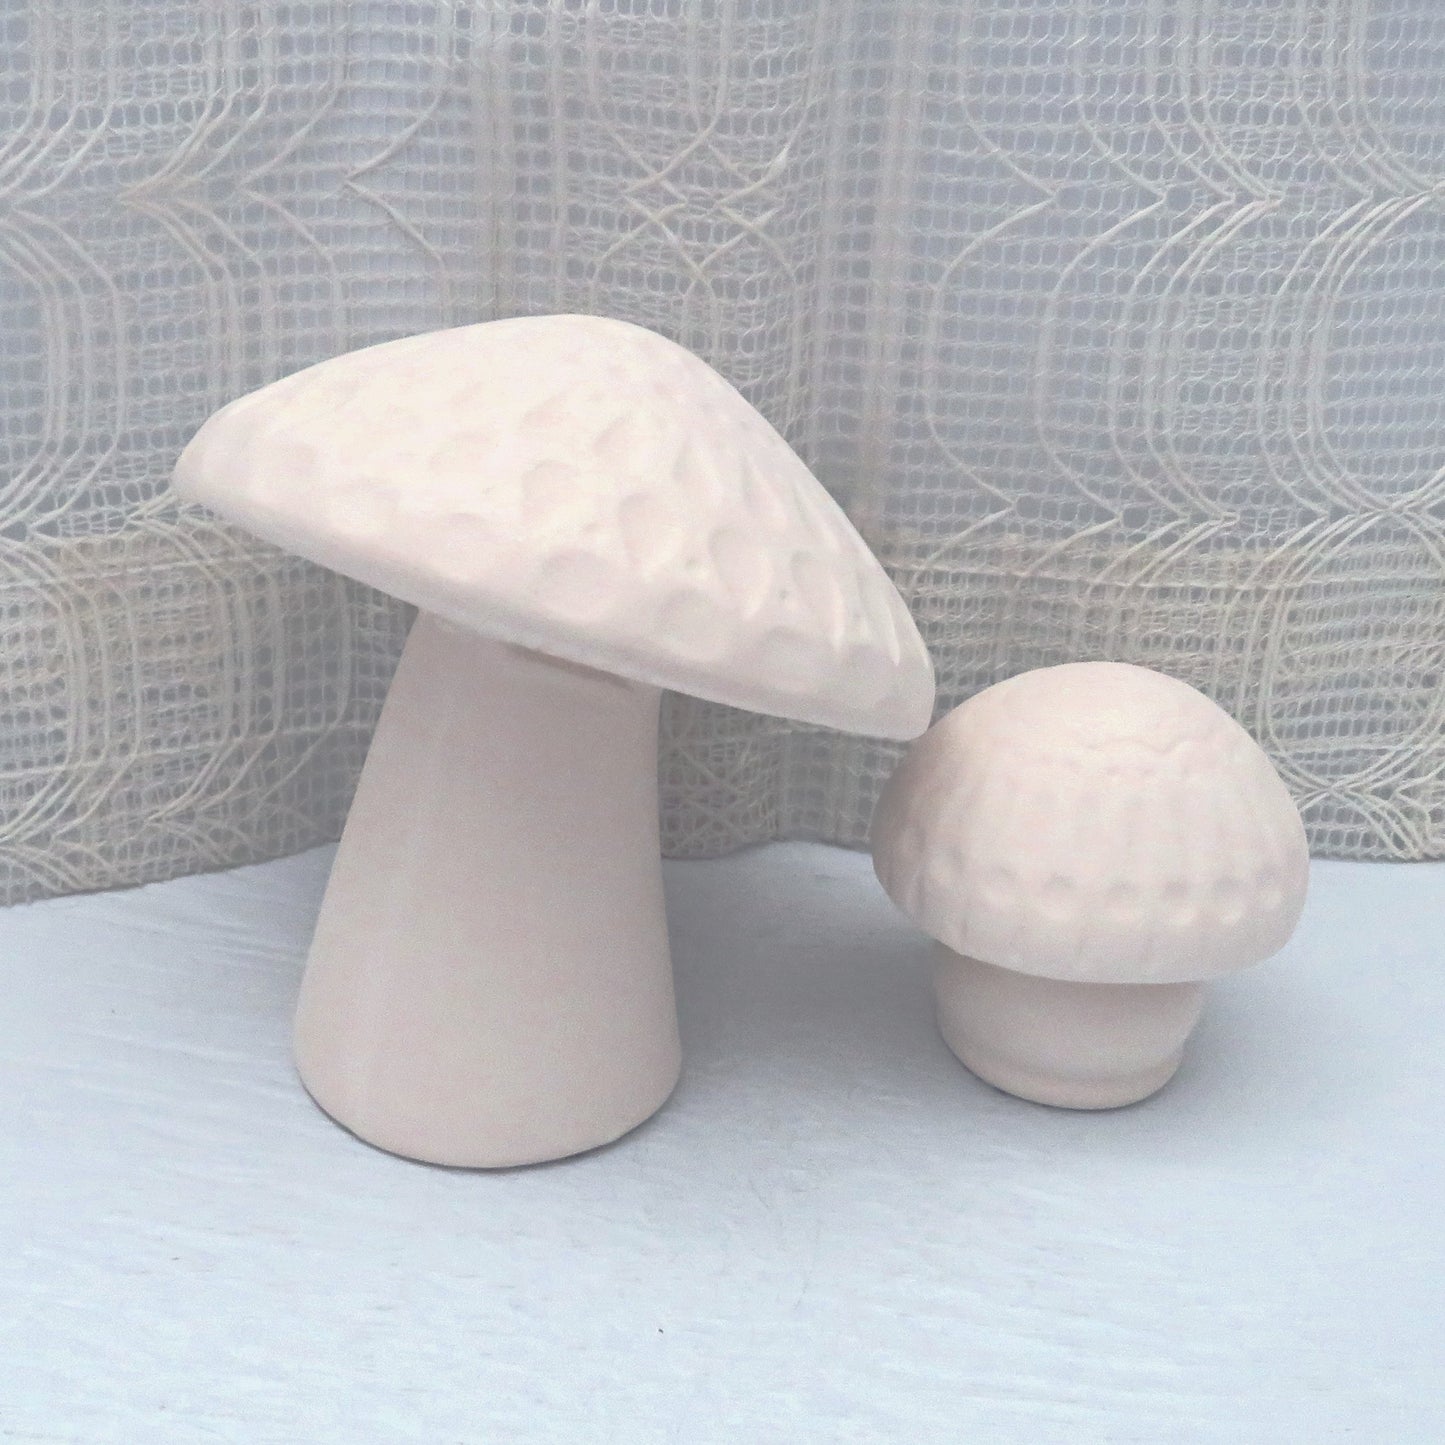 Set of 2 Unpainted Ceramic Mushroom Figurines, Paintable Mushroom Statues, Ready to Paint Garden Decor